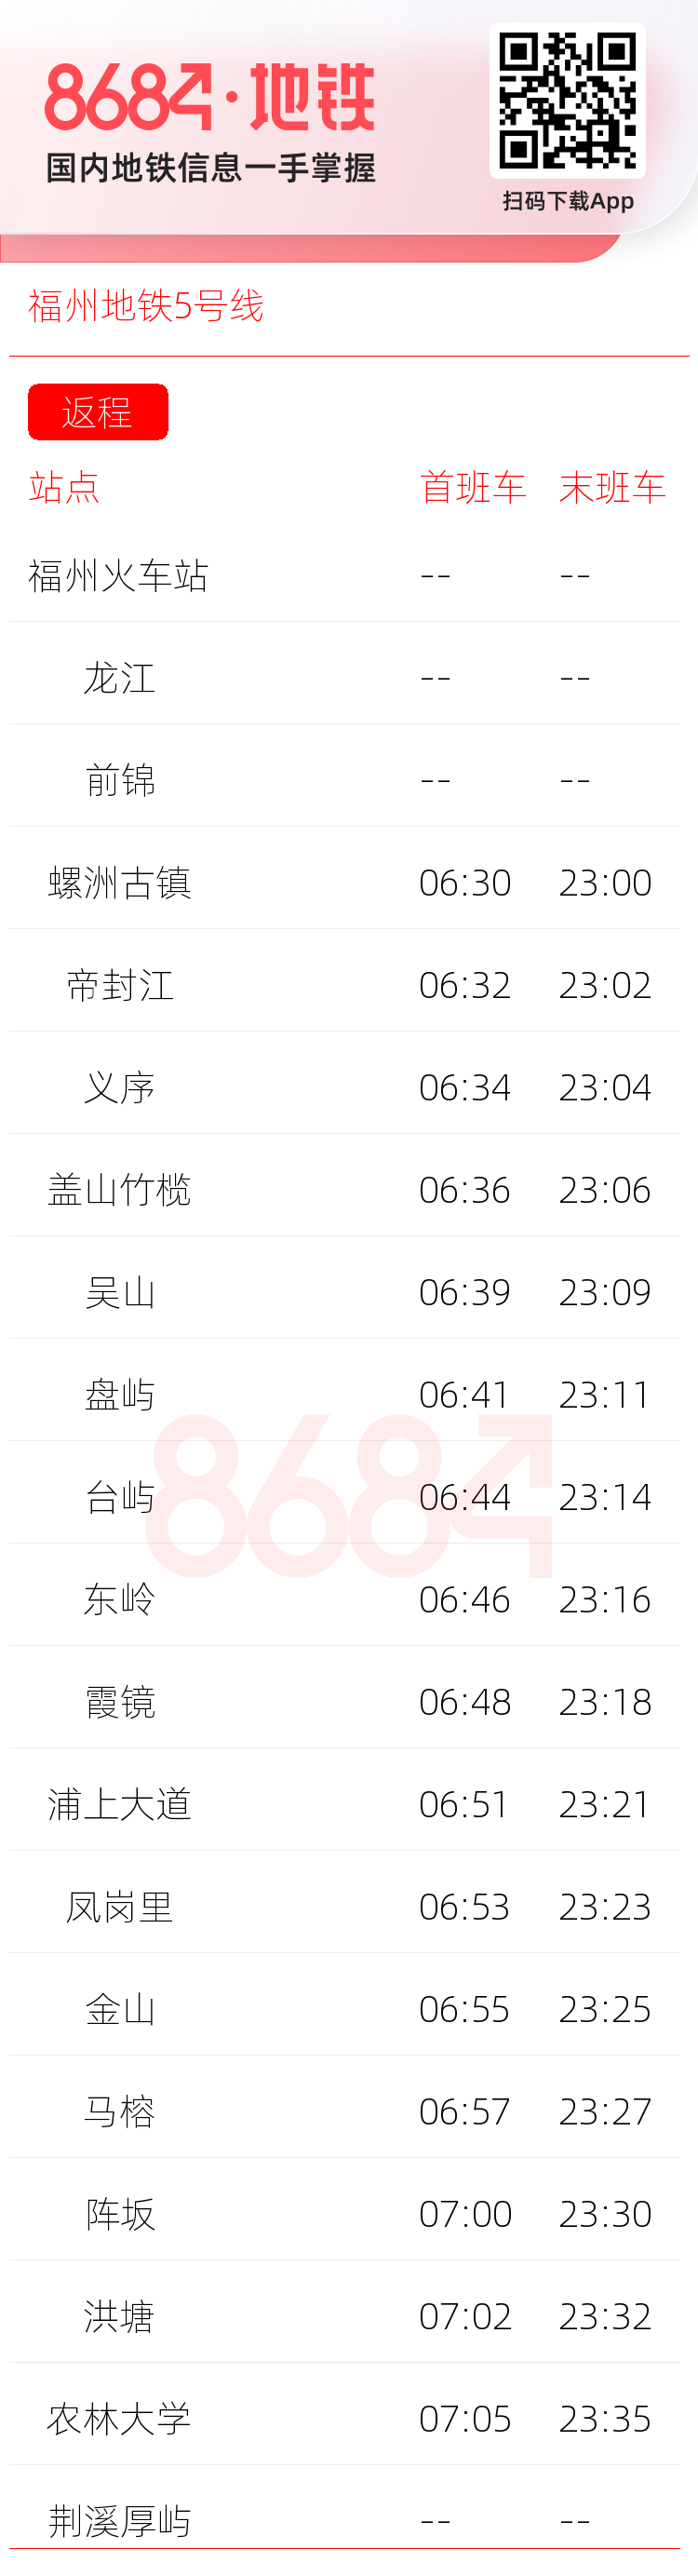 福州地铁5号线运营时间表